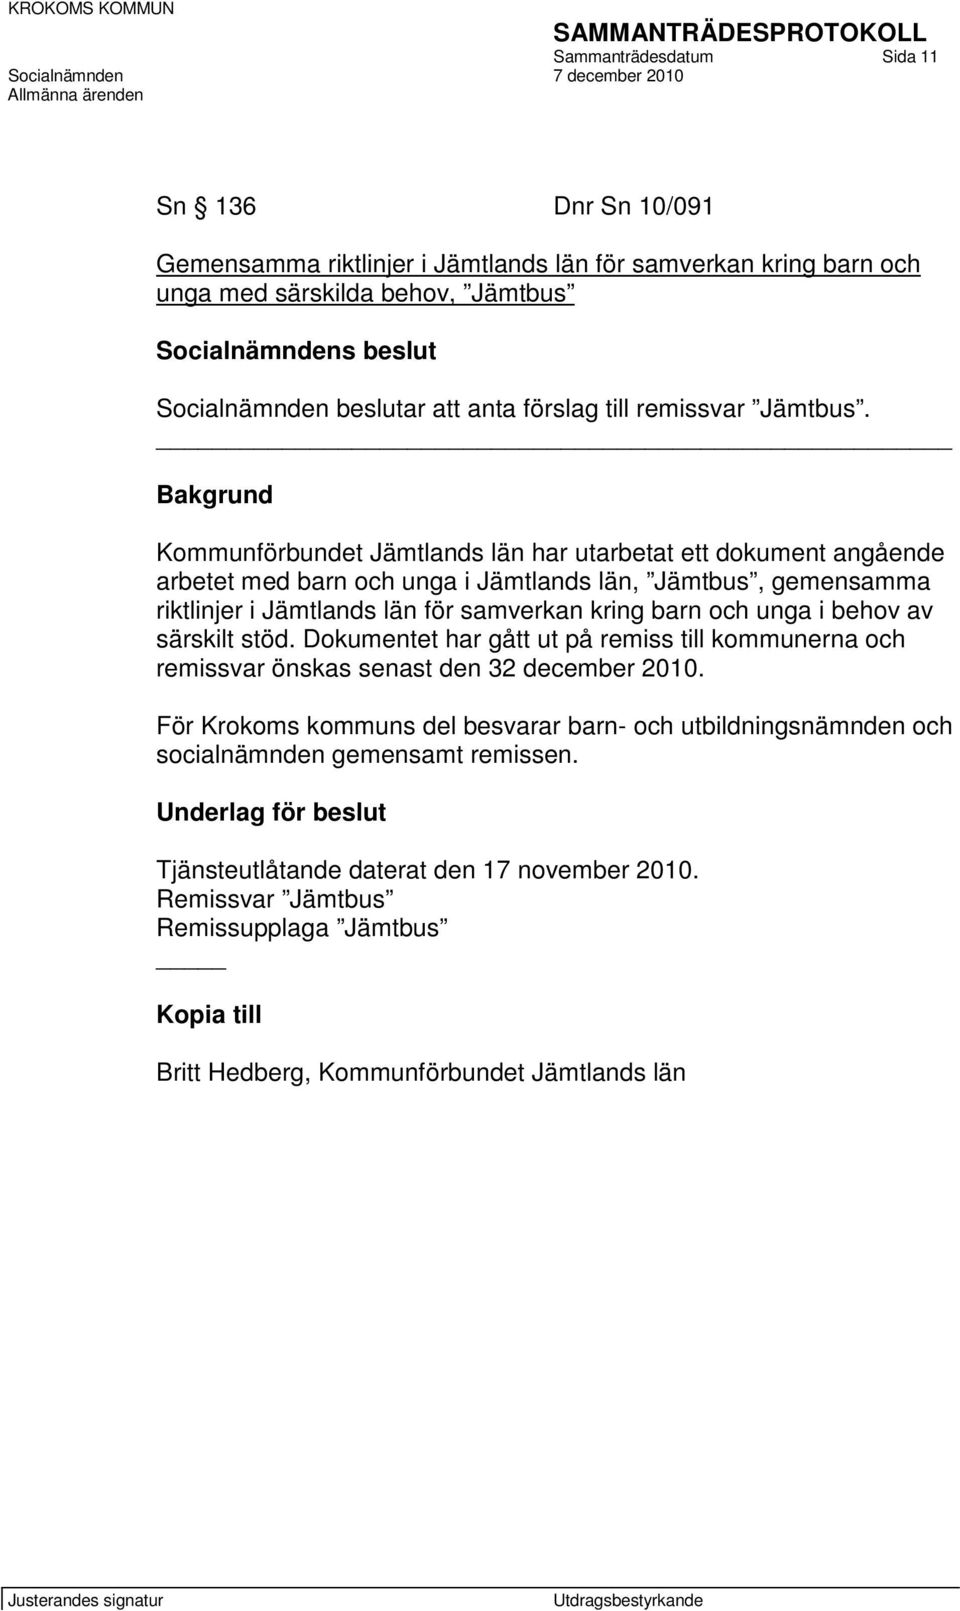 Bakgrund Kommunförbundet Jämtlands län har utarbetat ett dokument angående arbetet med barn och unga i Jämtlands län, Jämtbus, gemensamma riktlinjer i Jämtlands län för samverkan kring barn och unga